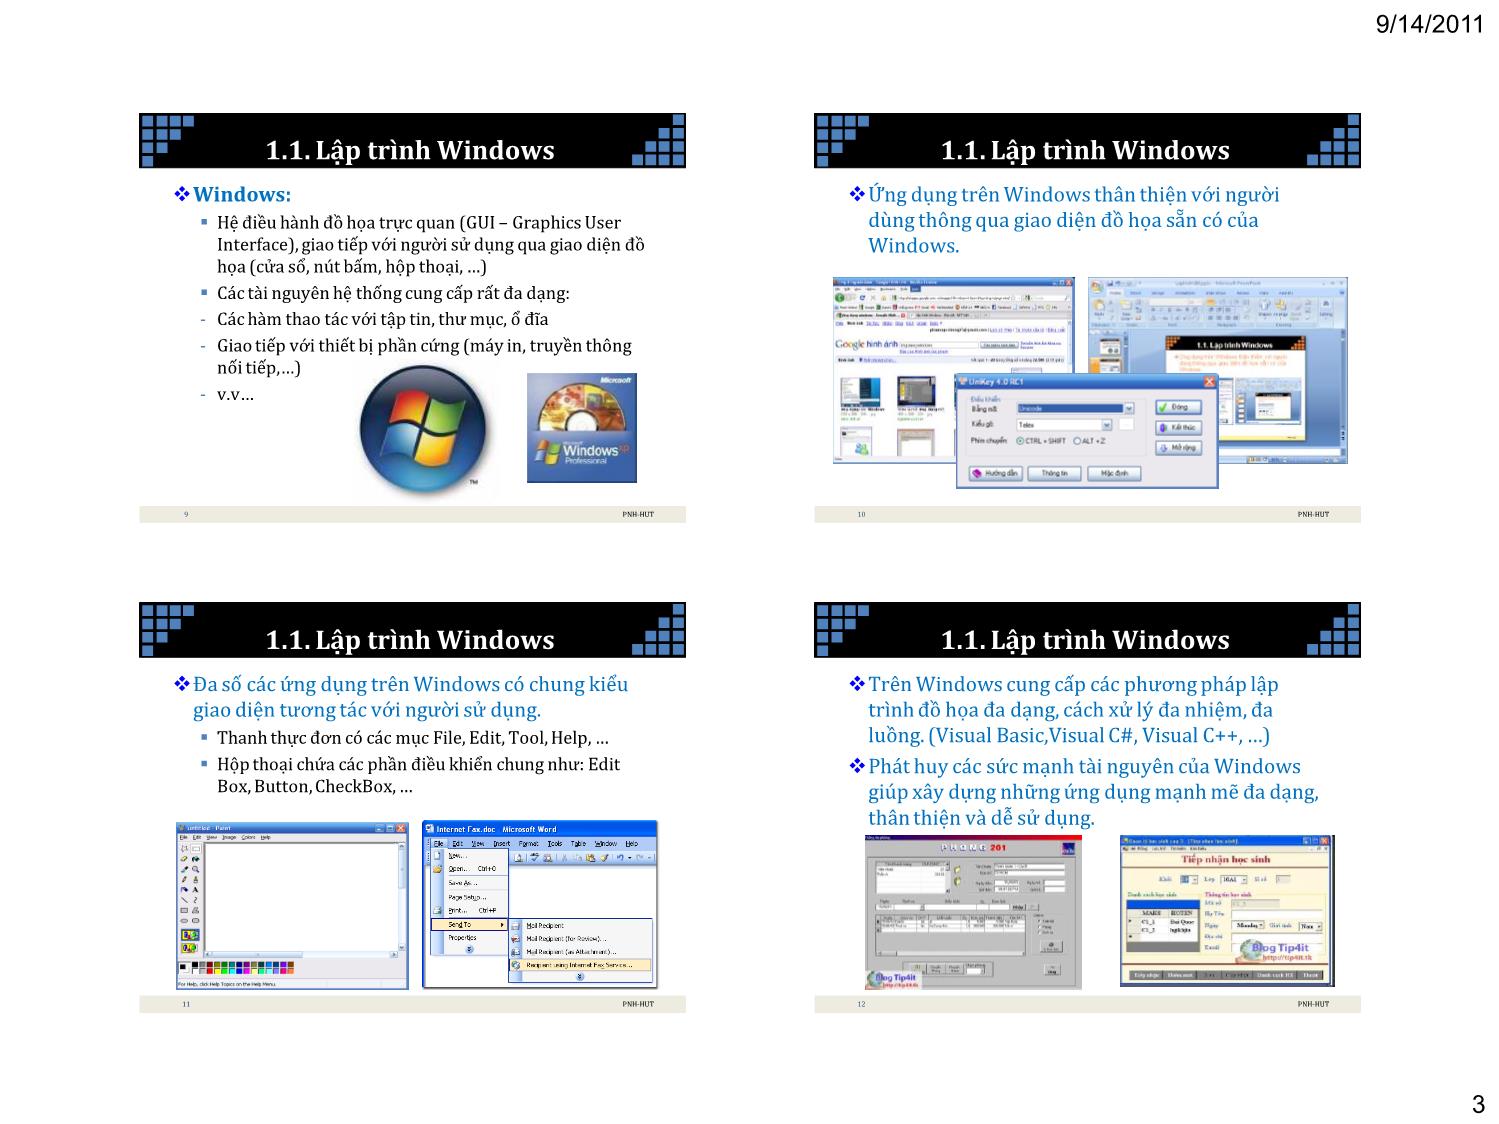 Lập trình Windows Visual Basic trang 3